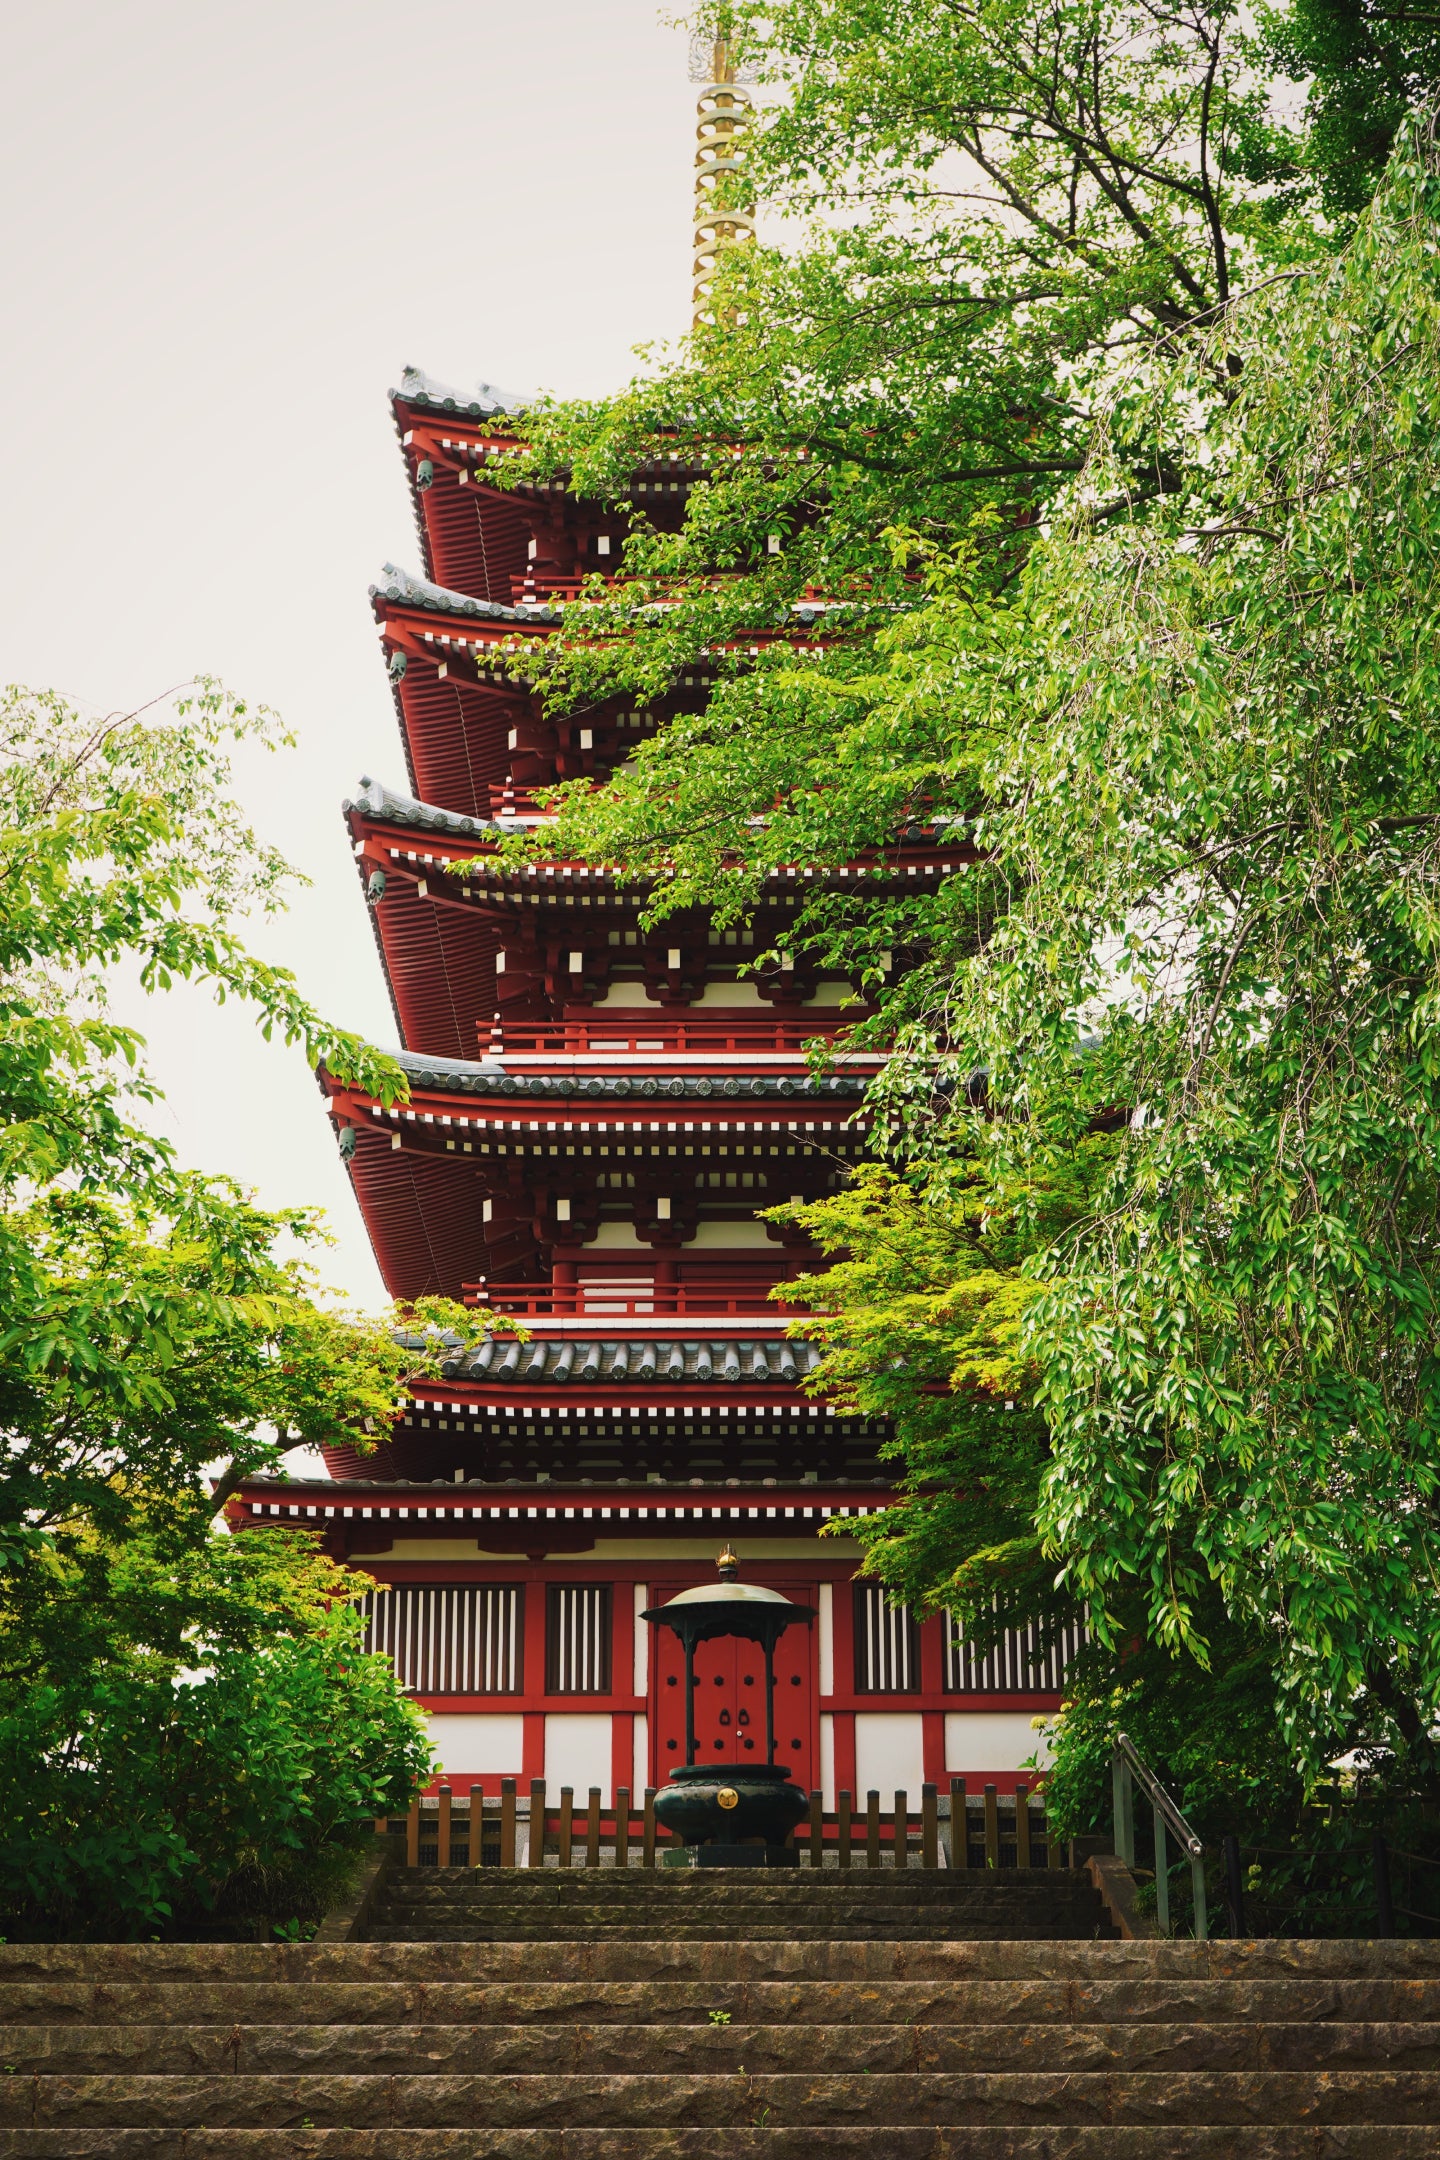 本土寺の中にあった五重塔の写真